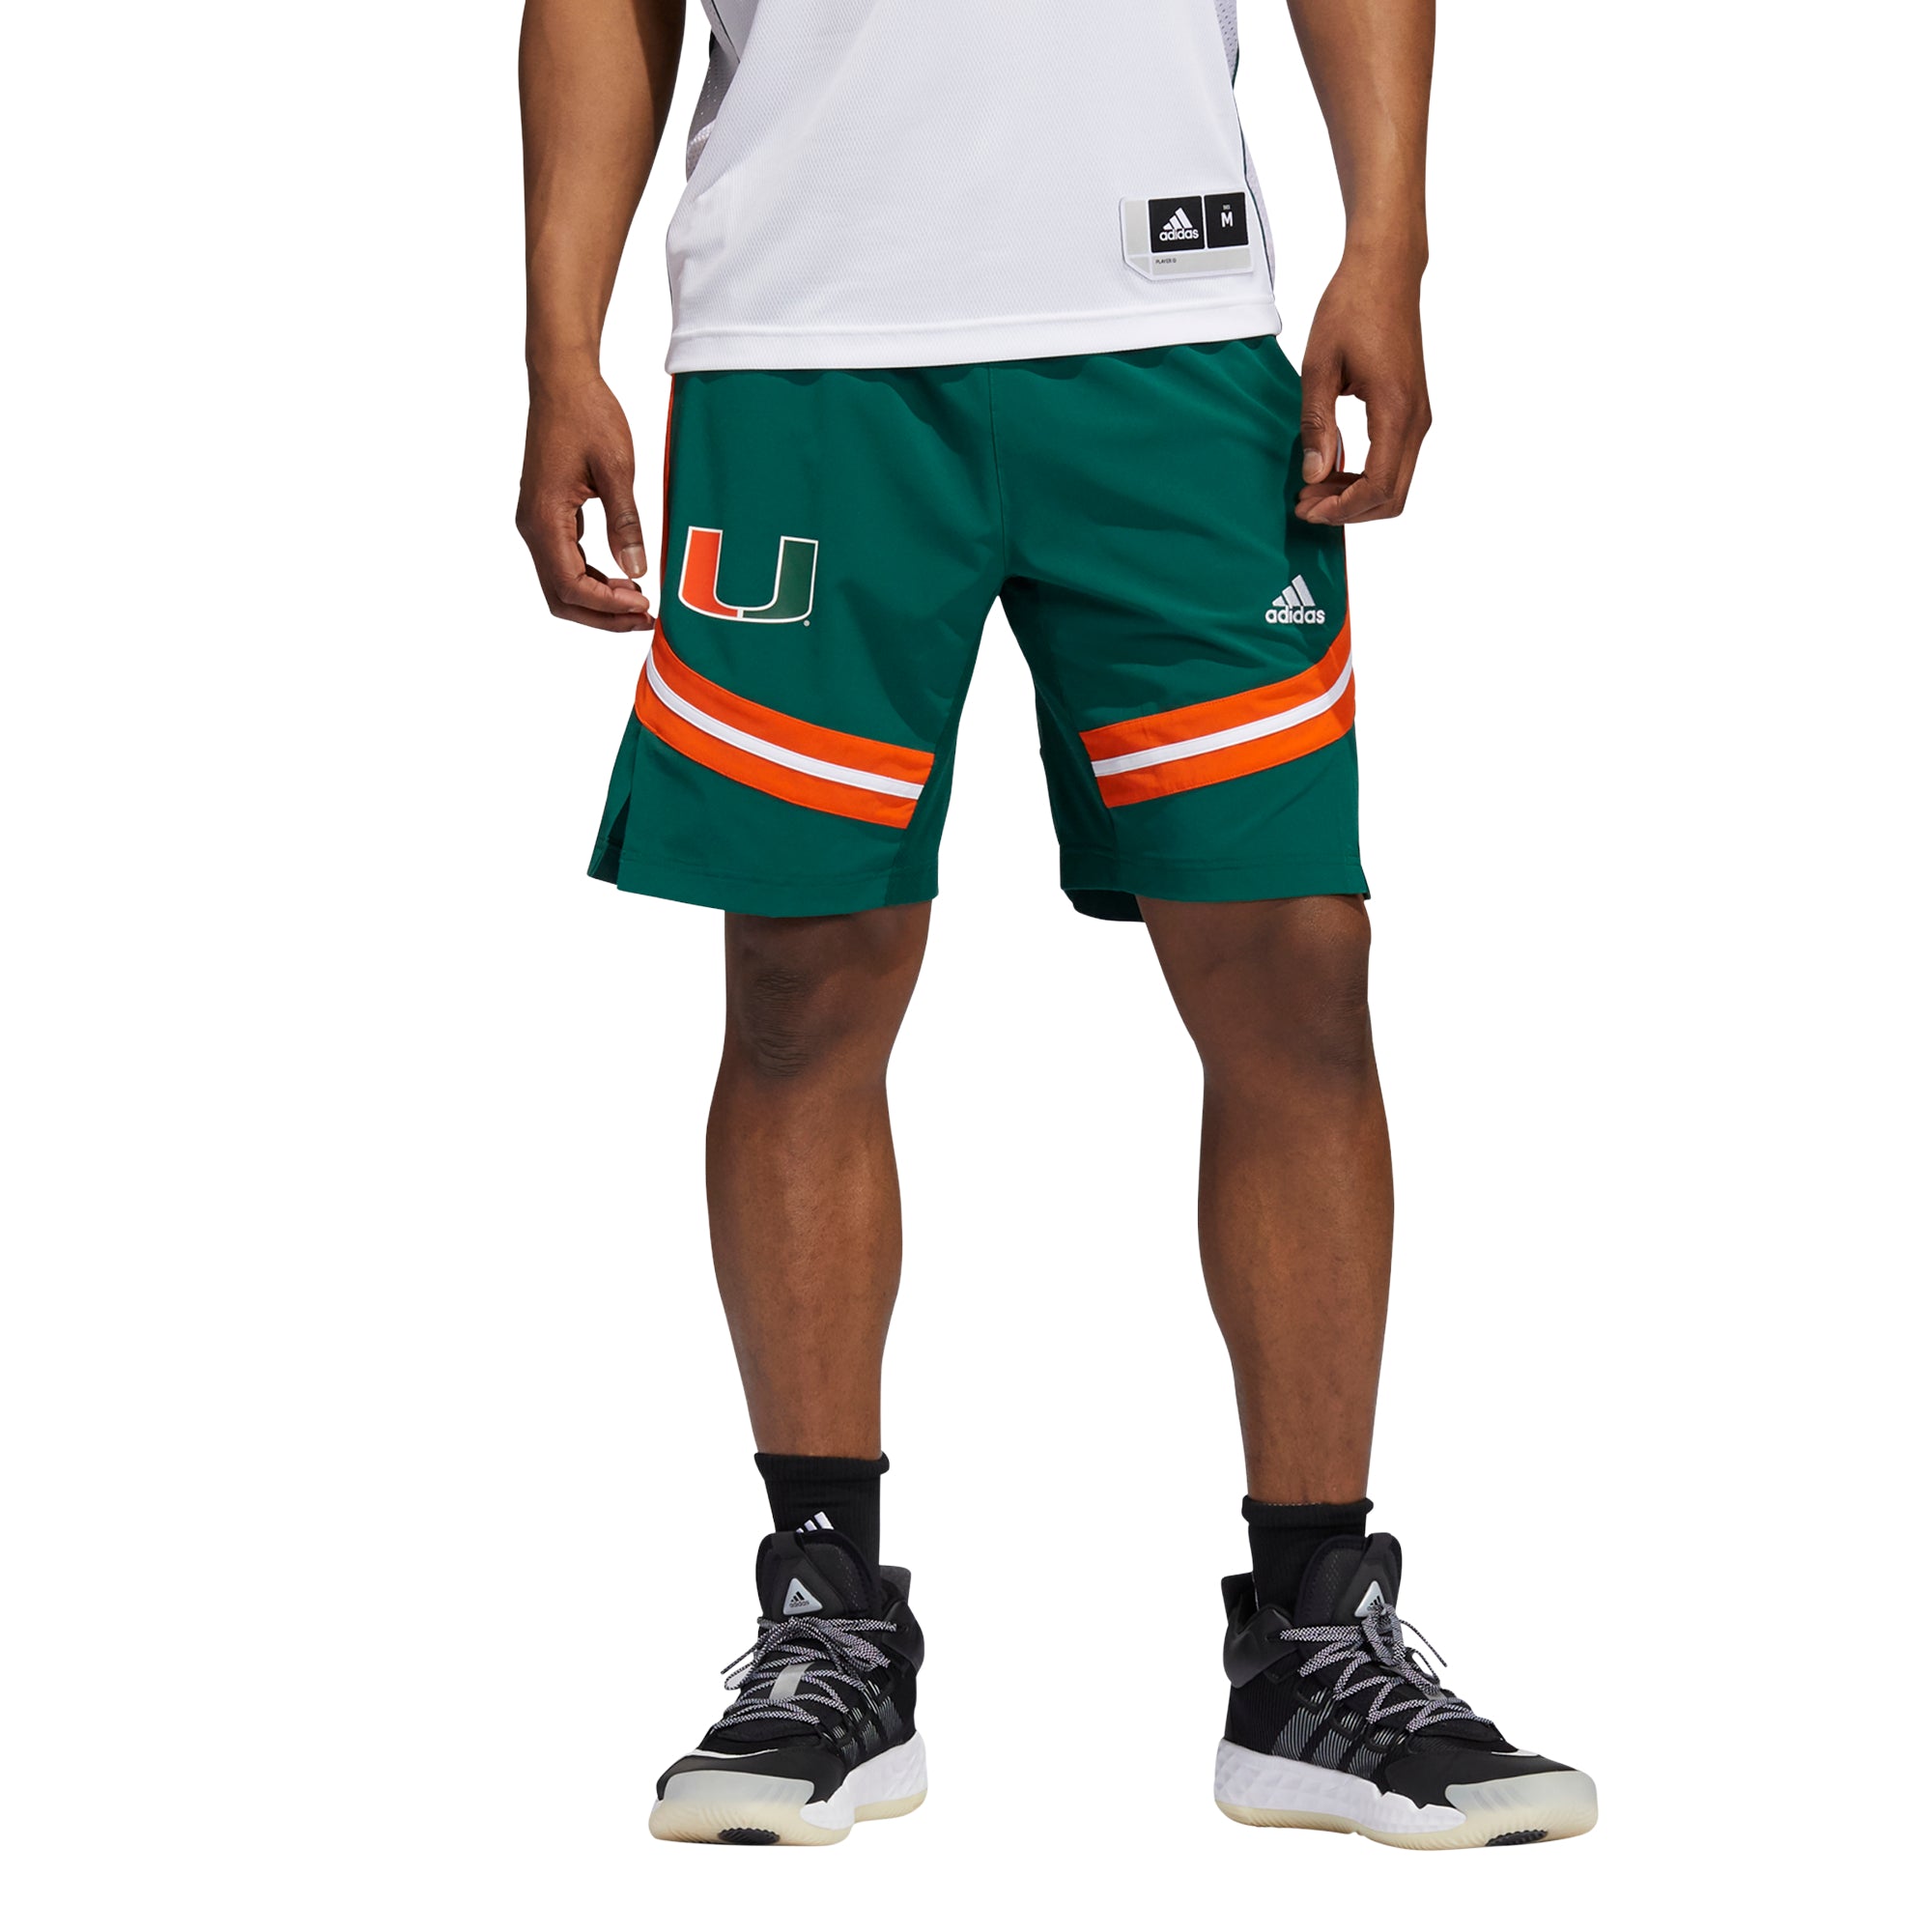 Miami Hurricanes adidas Basketball Shorts - Green